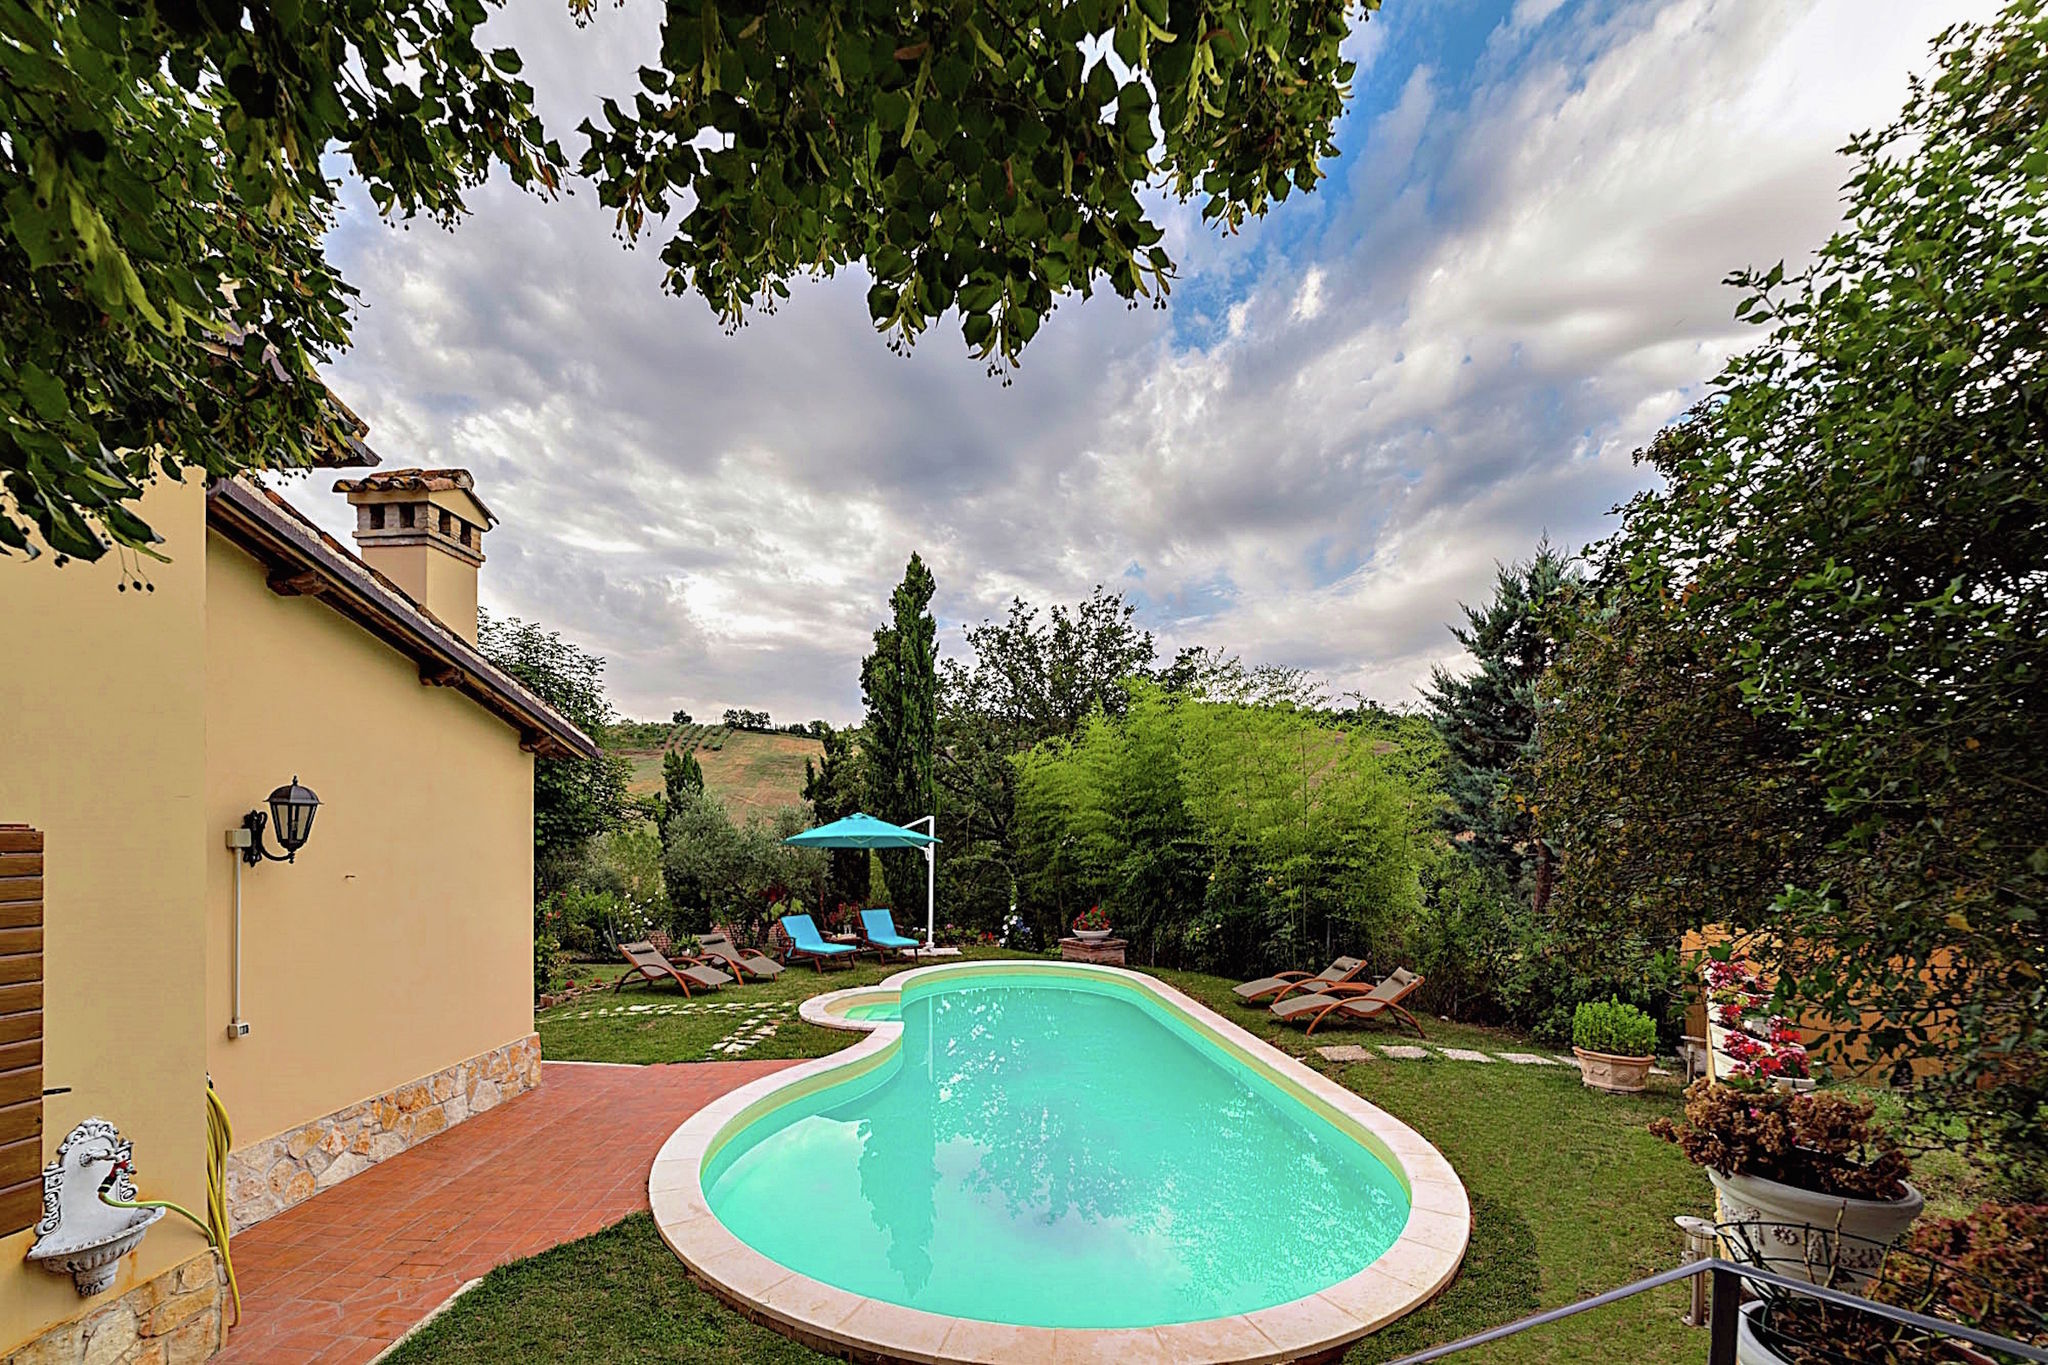 Gorgeous Villa near Spoleto with Swimming Pool